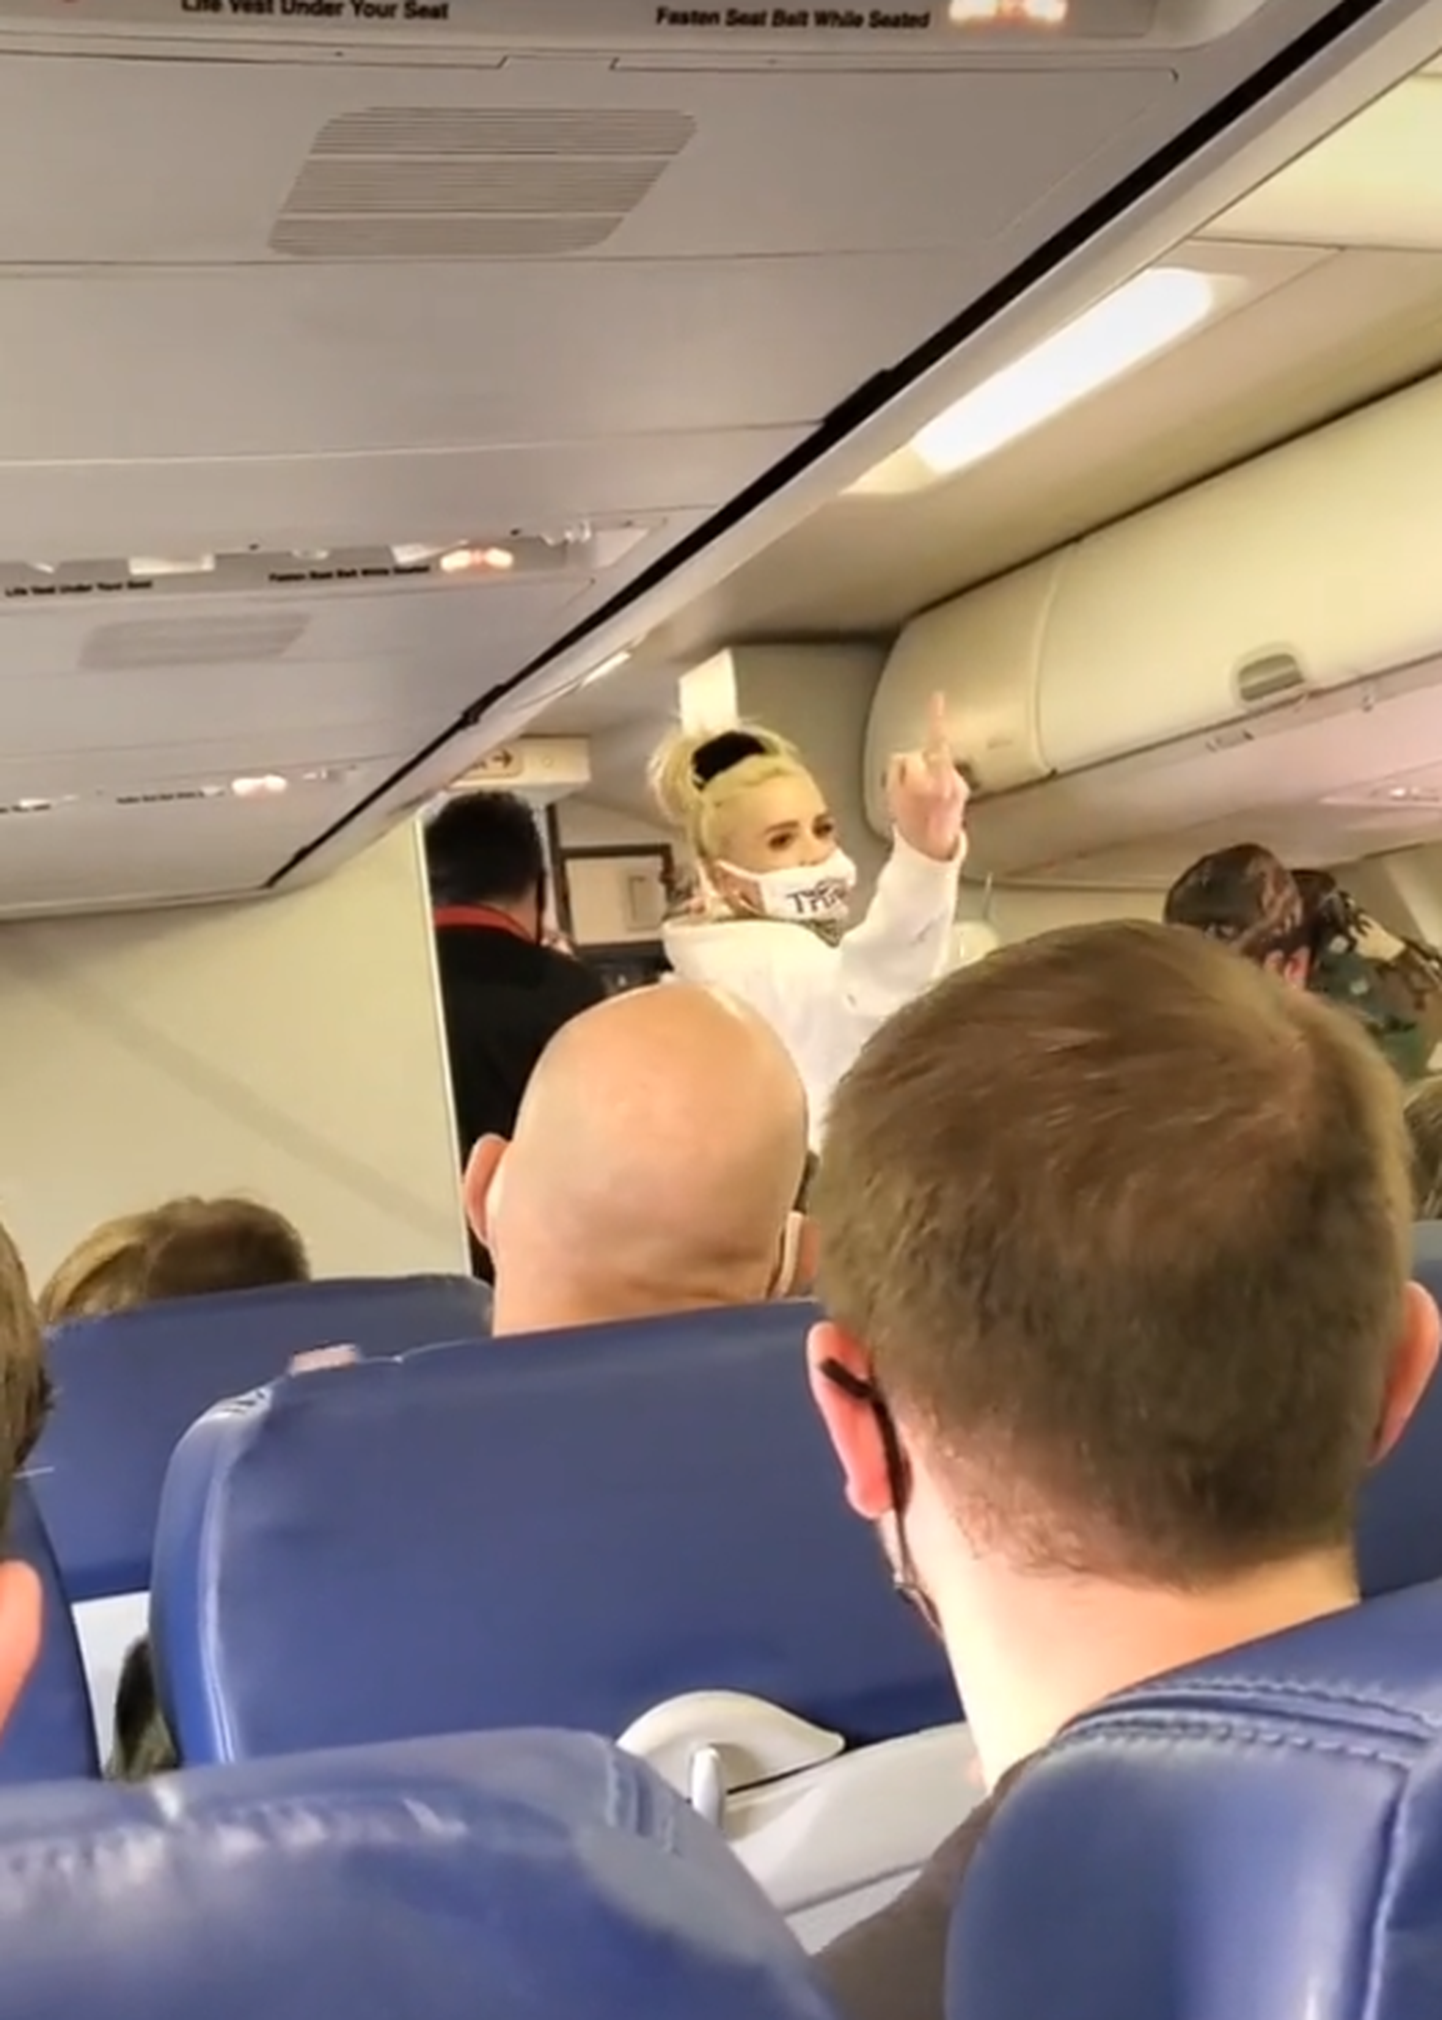 Southwest Airlinesi lennul sattus personaliga vaidlusesse naine, kes tabati ilma näomaskita.